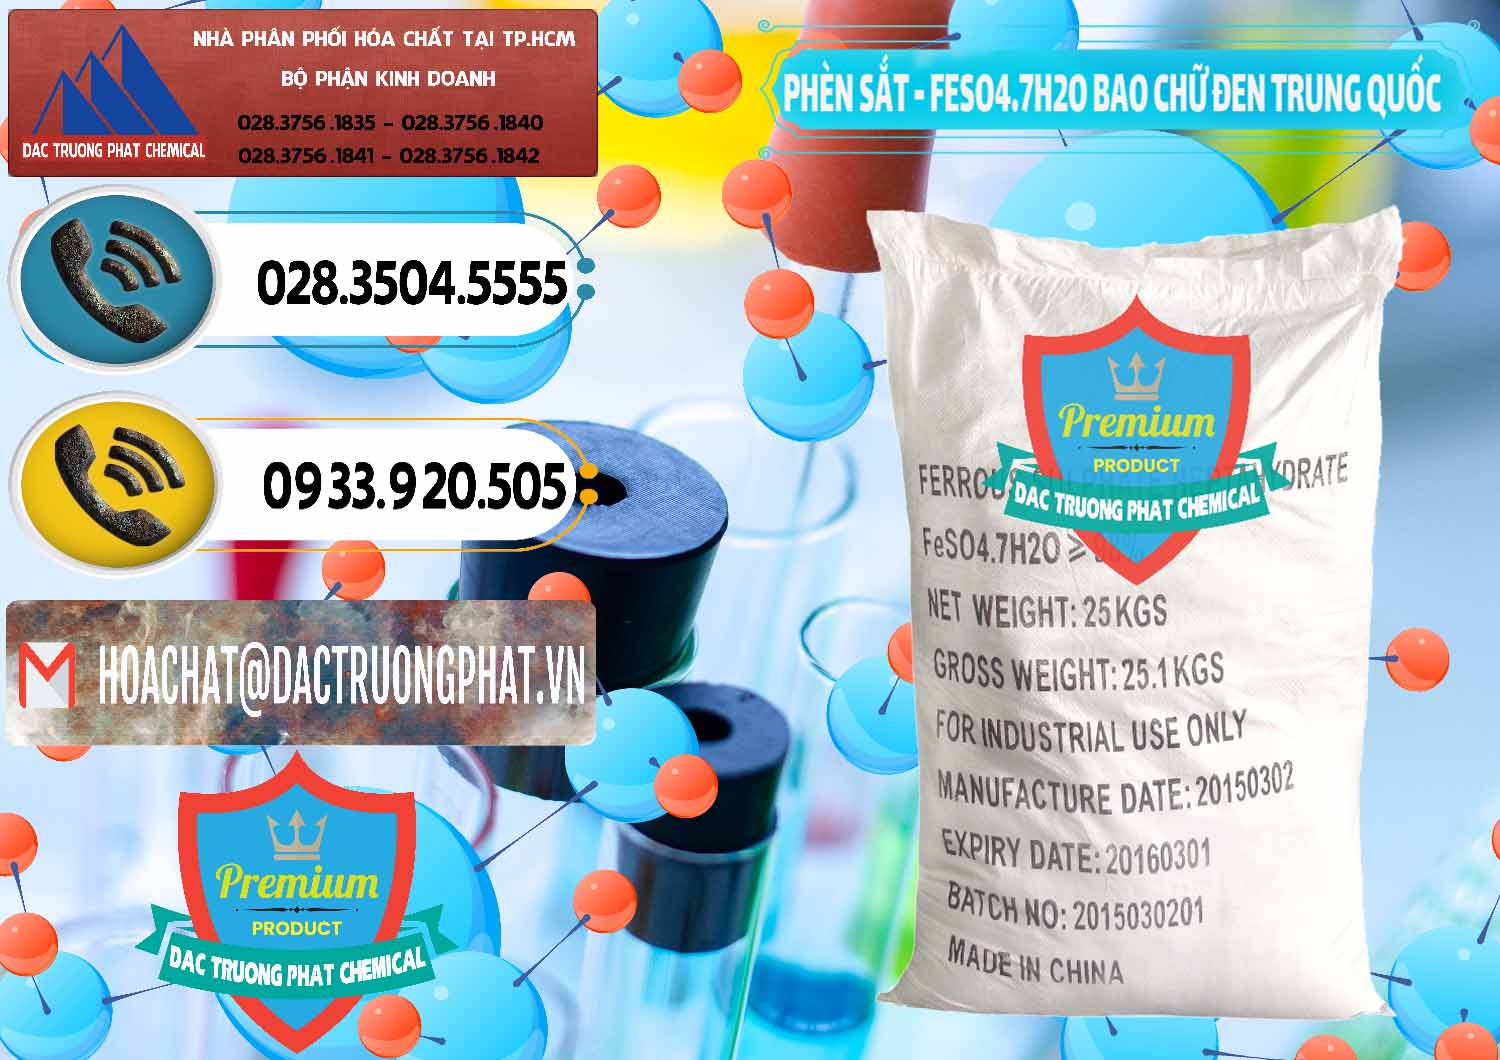 Cty chuyên phân phối _ bán Phèn Sắt - FeSO4.7H2O Bao Chữ Đen Trung Quốc China - 0234 - Nơi phân phối _ cung cấp hóa chất tại TP.HCM - hoachatdetnhuom.vn